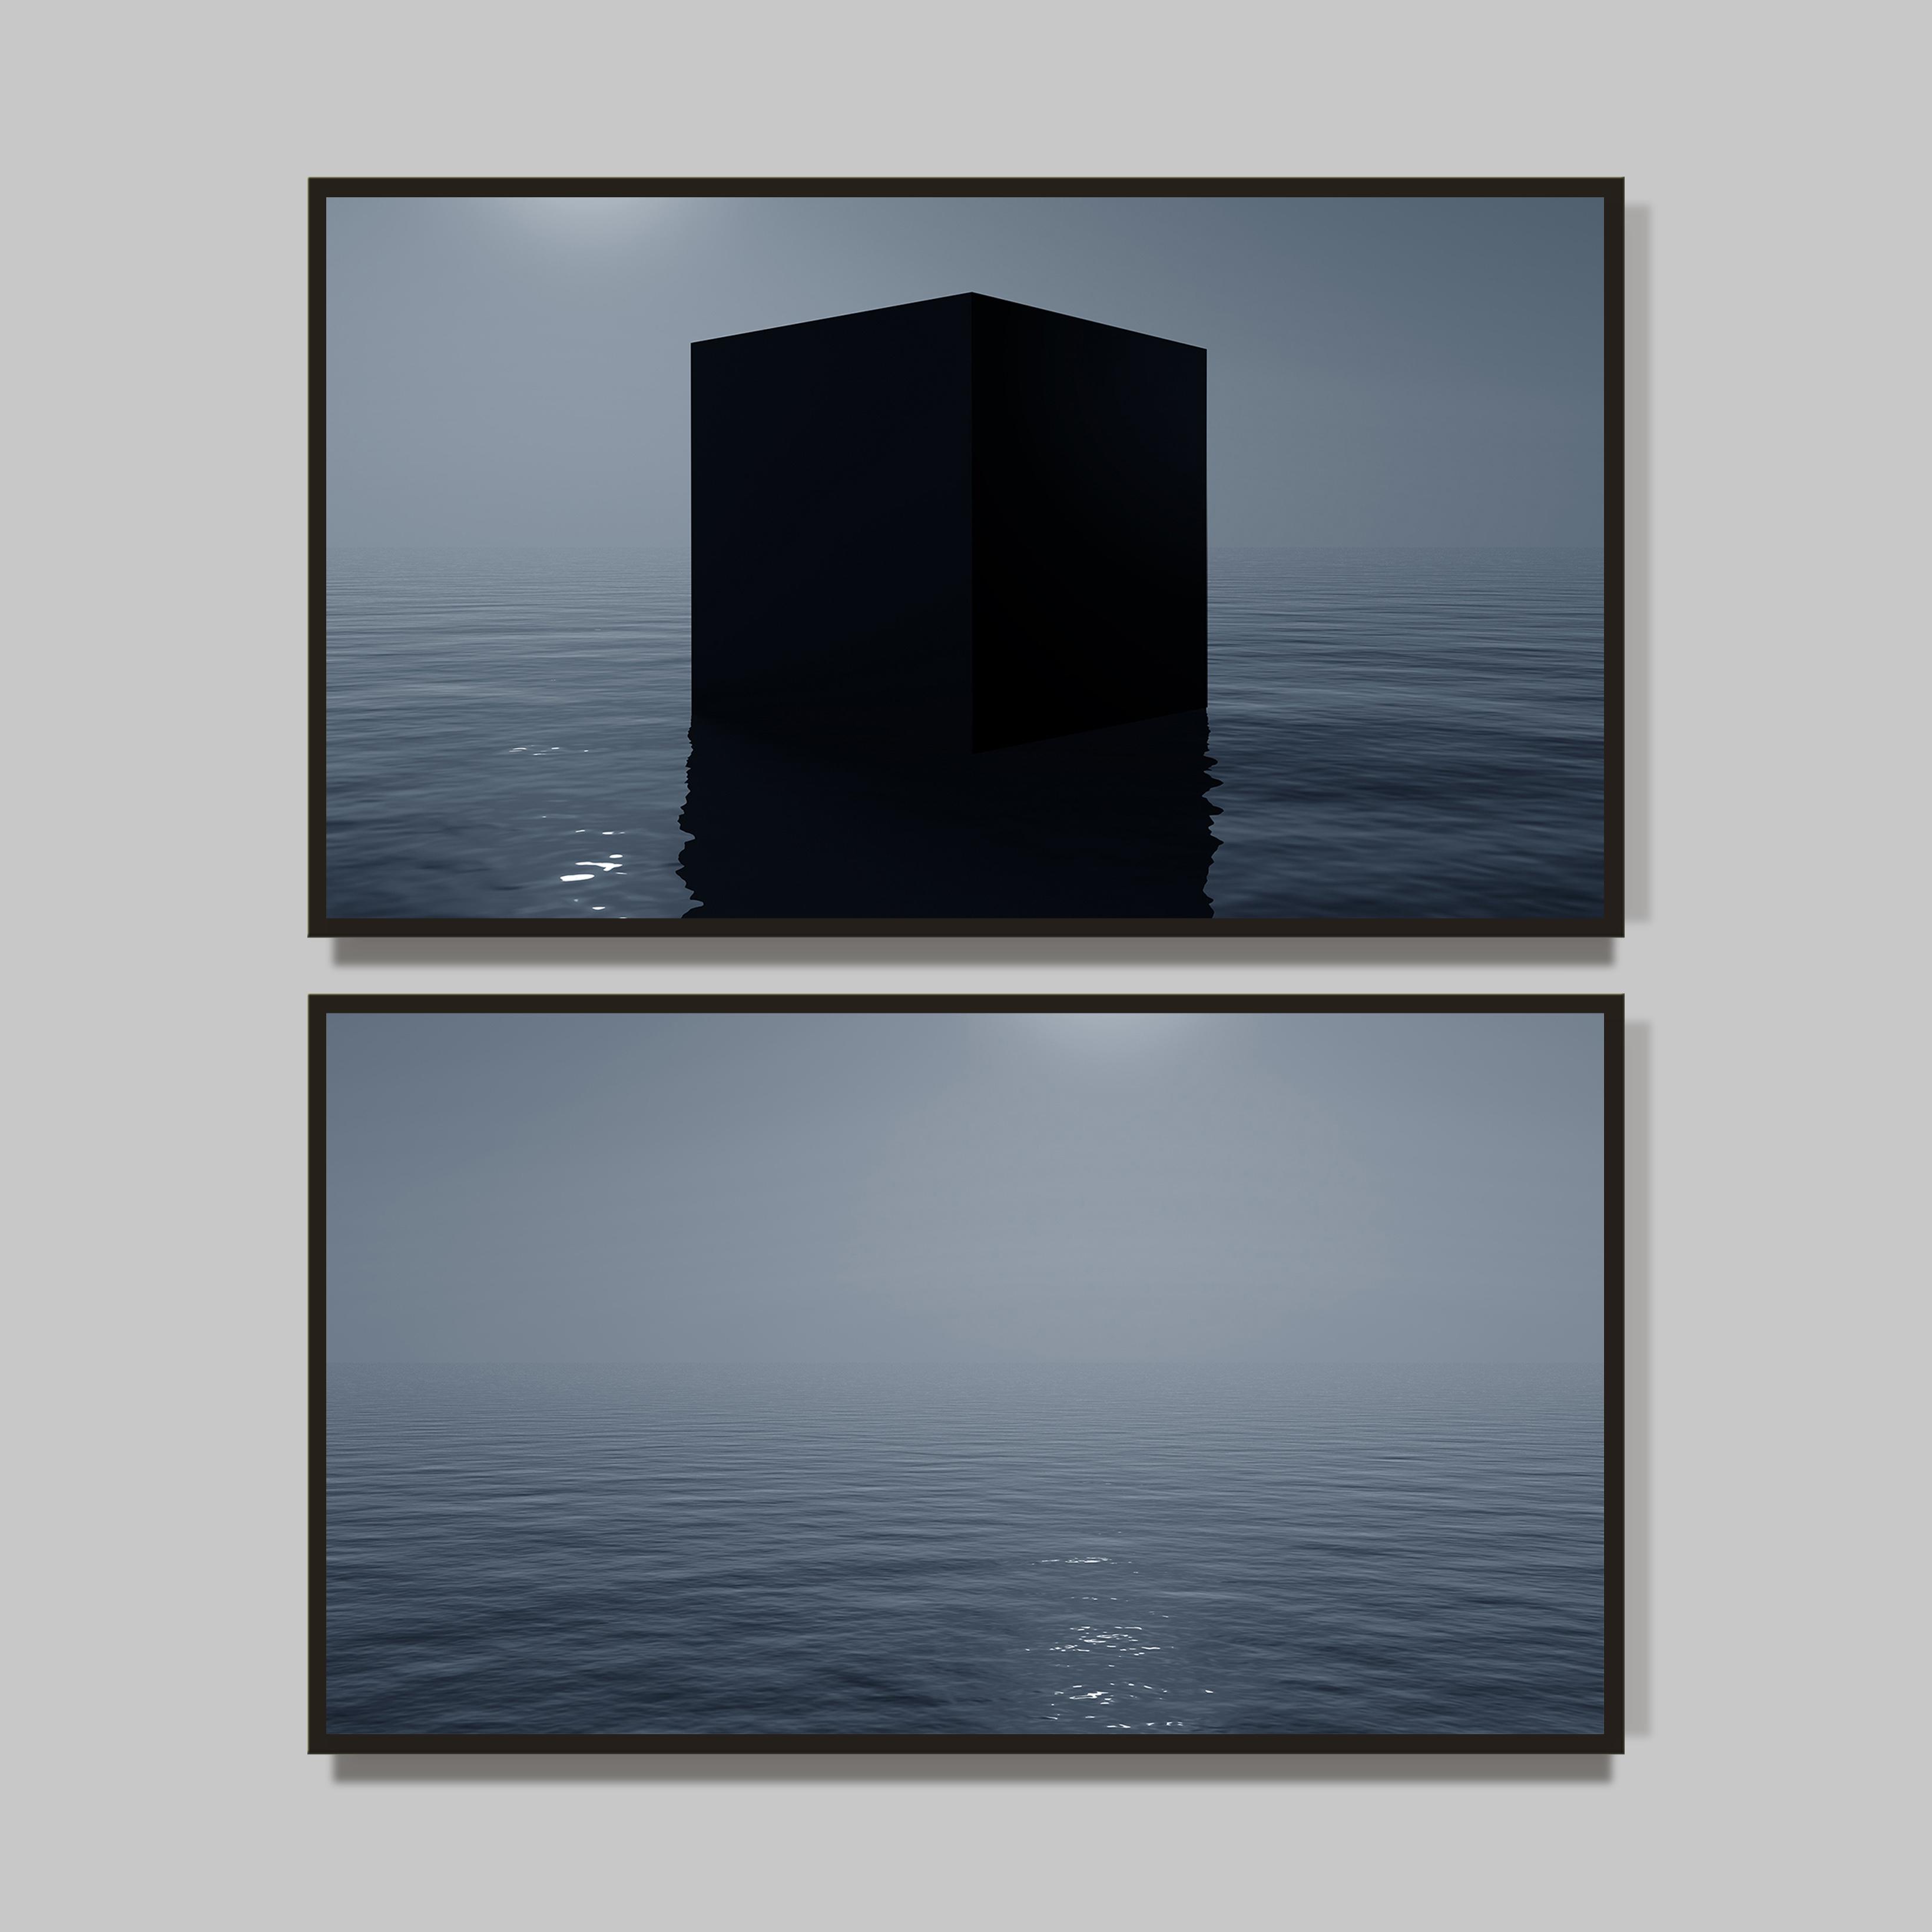 Naufrage du cube, 2013-1/3
Œuvre digitale
100 x 178 cm